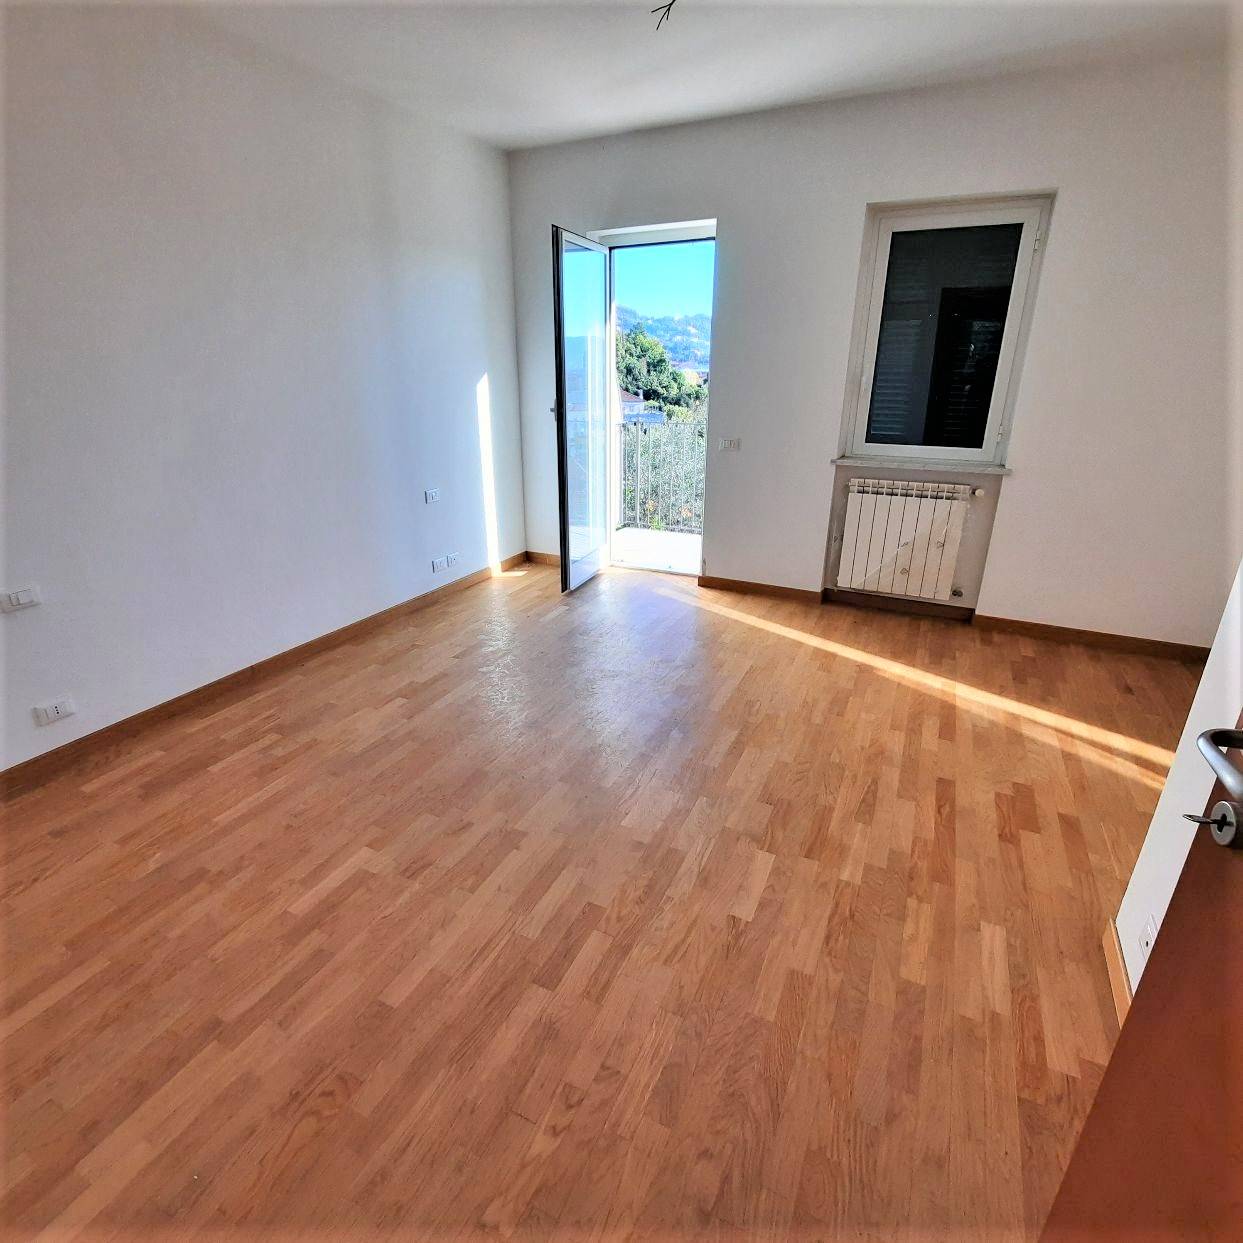 Appartamento nuovo a La Spezia - montepertico - 01, Foto